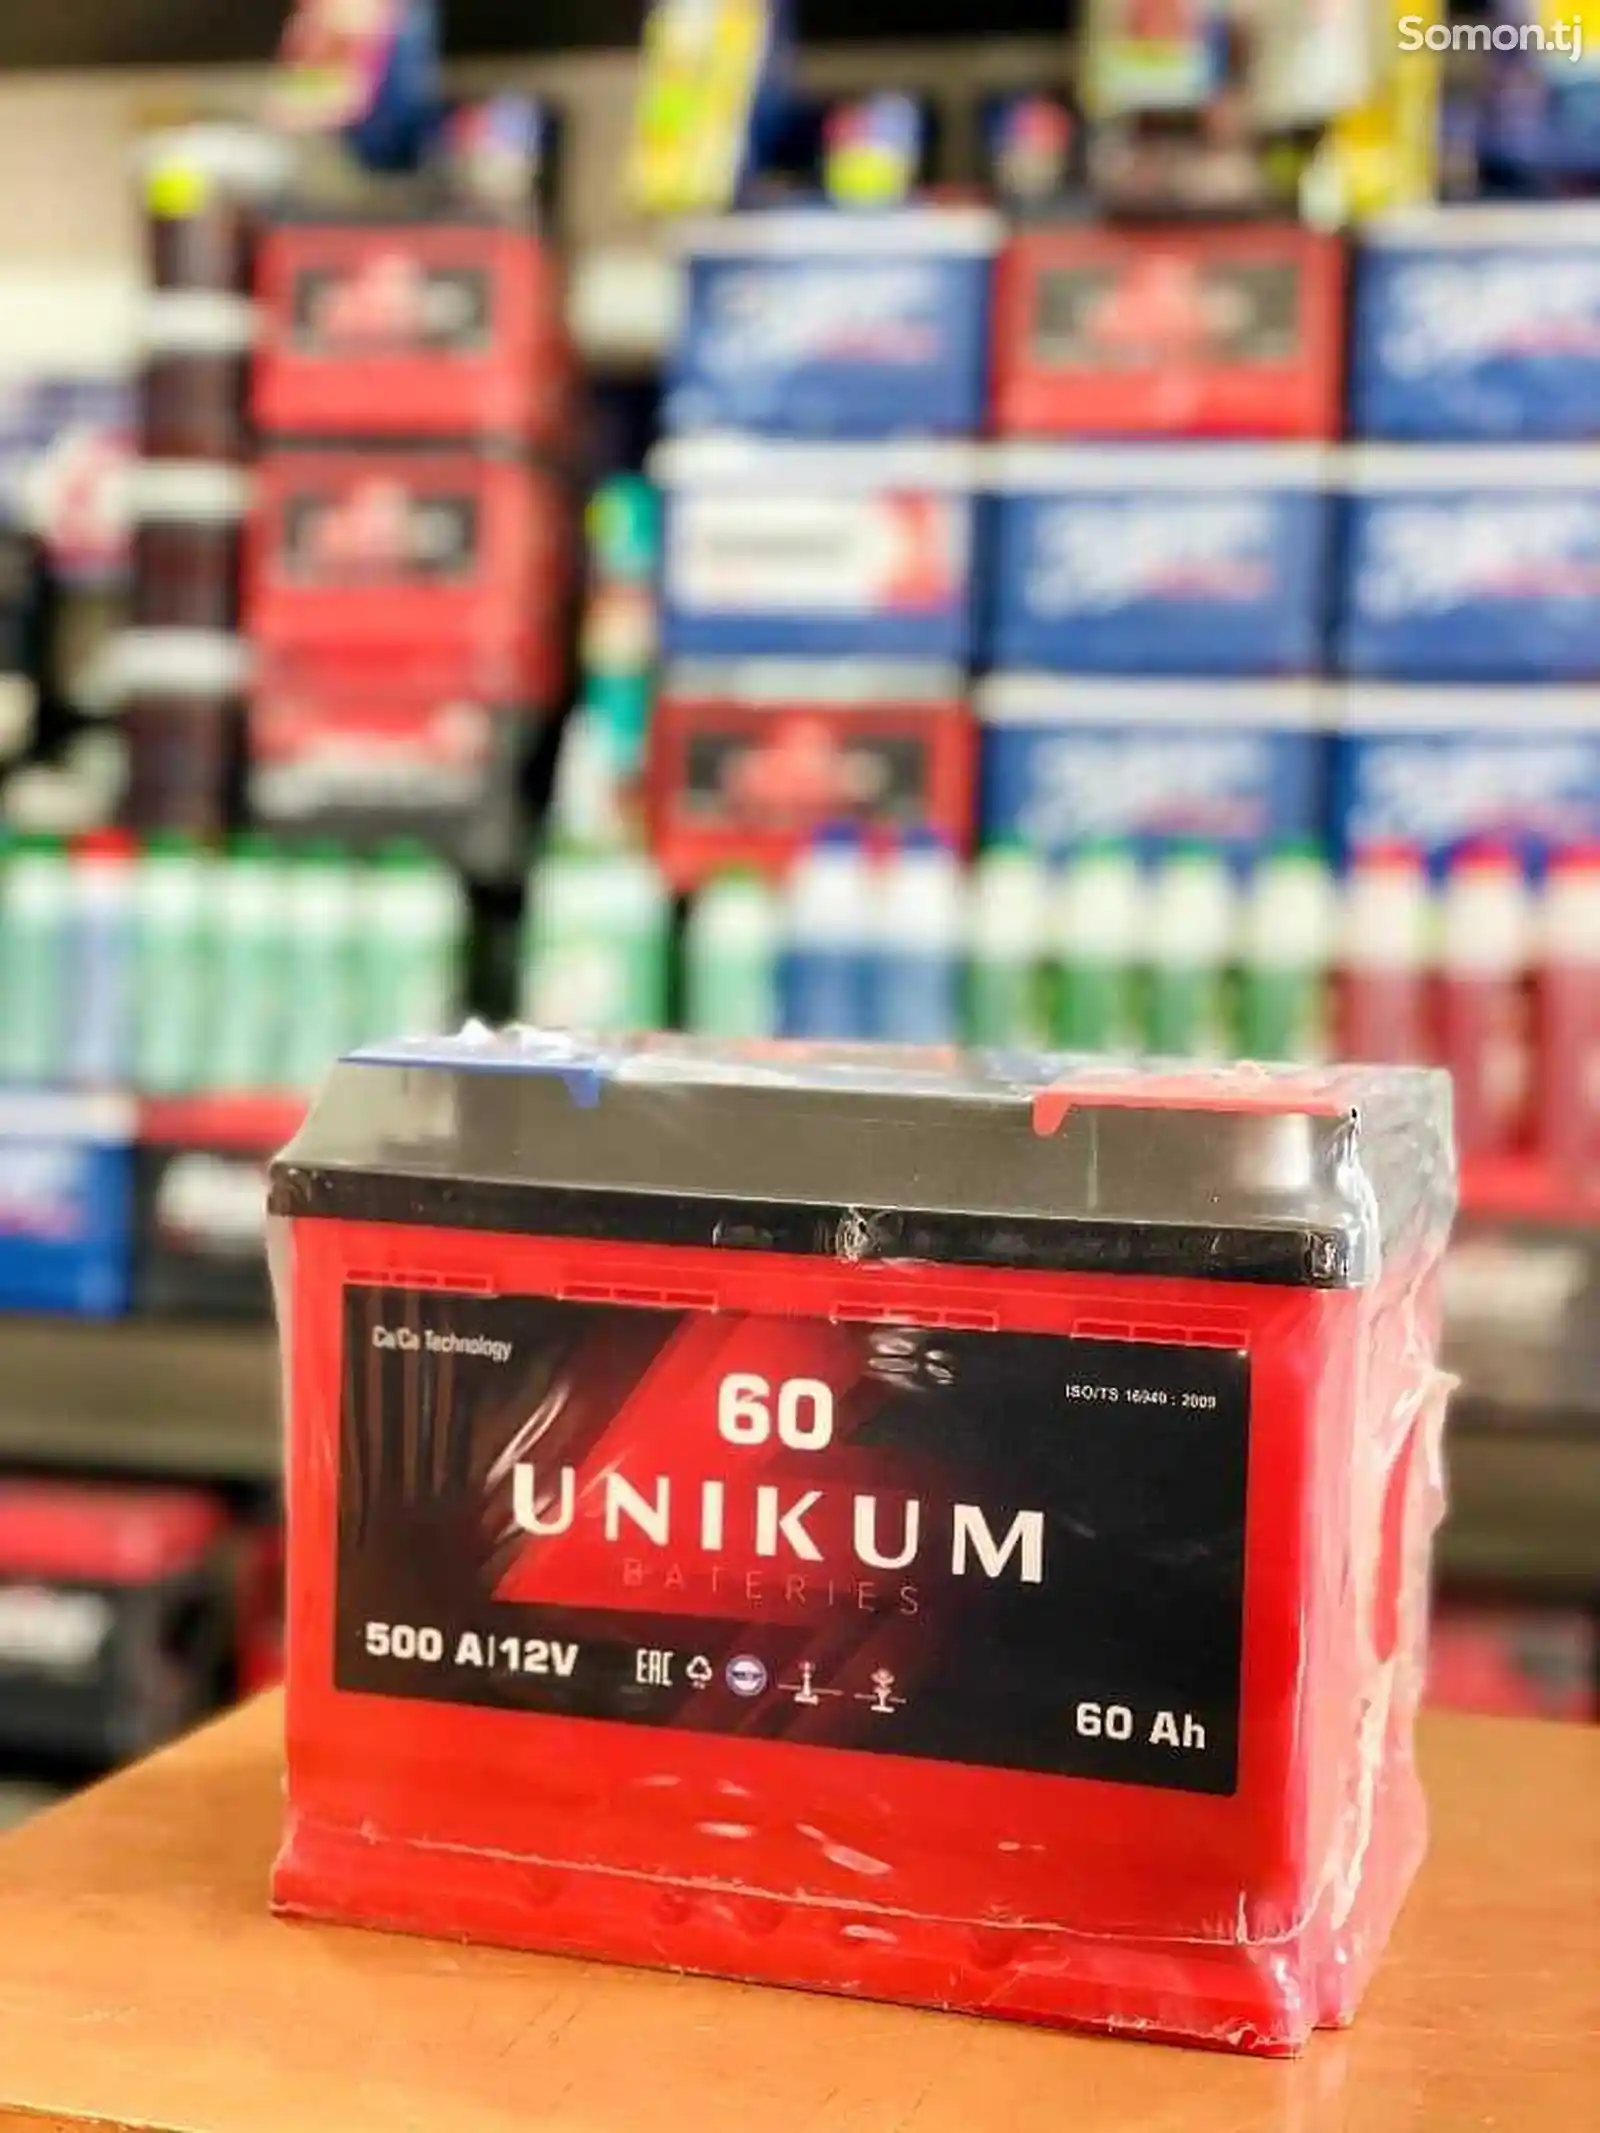 Аккумулятор Unikum 60Ah 500A EN-2